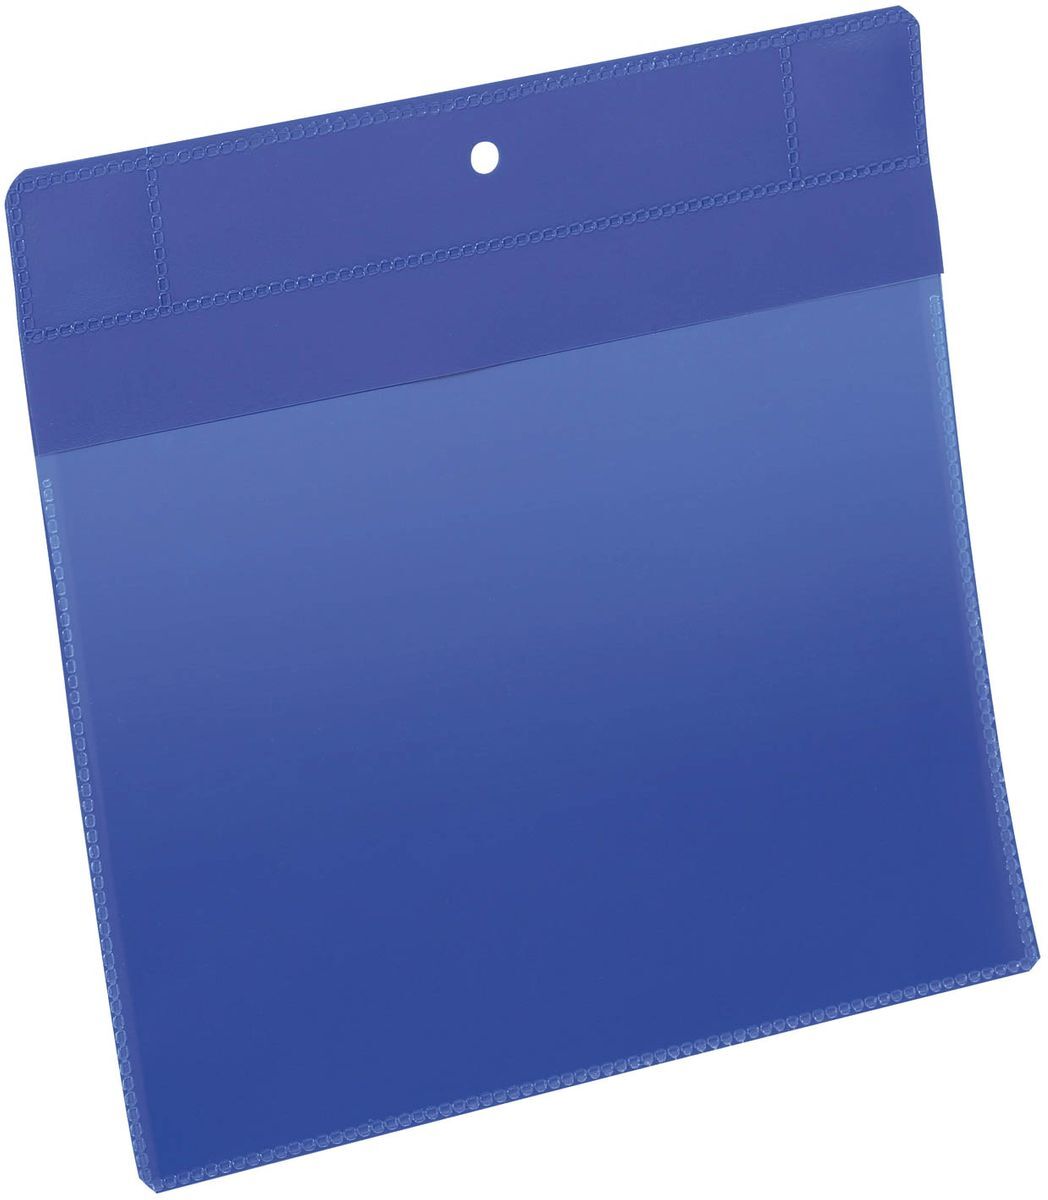 Kennzeichnungstasche - magnetisch, A5 quer, PP, dokumentenecht, dunkelblau, 10 Stück